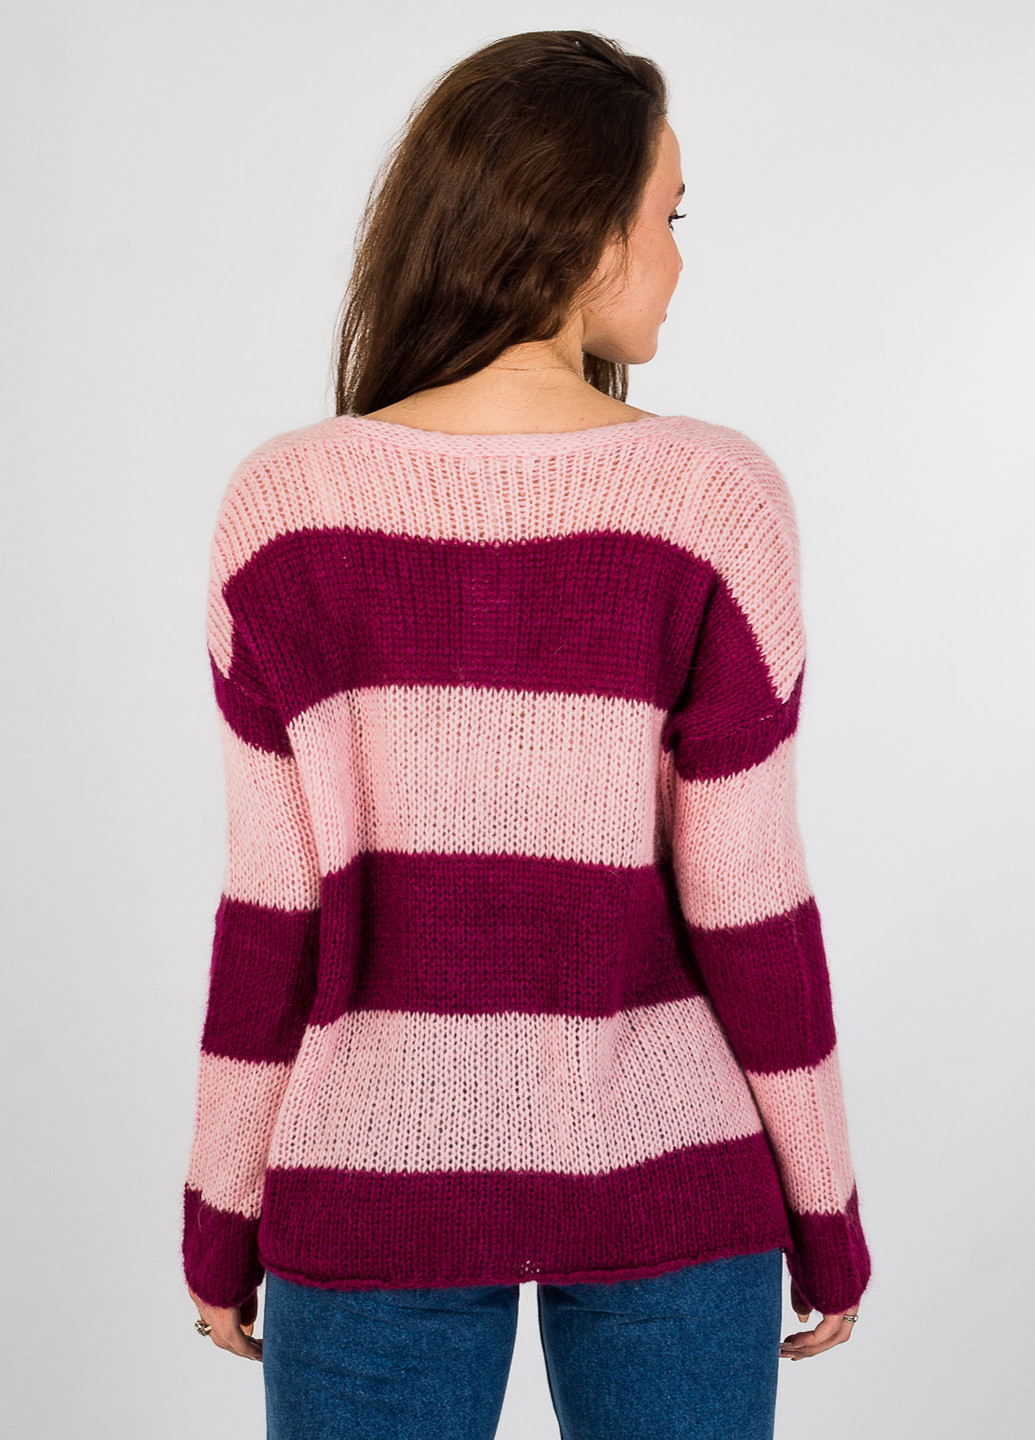 Комбинированный демисезонный пуловер пуловер Tensione IN